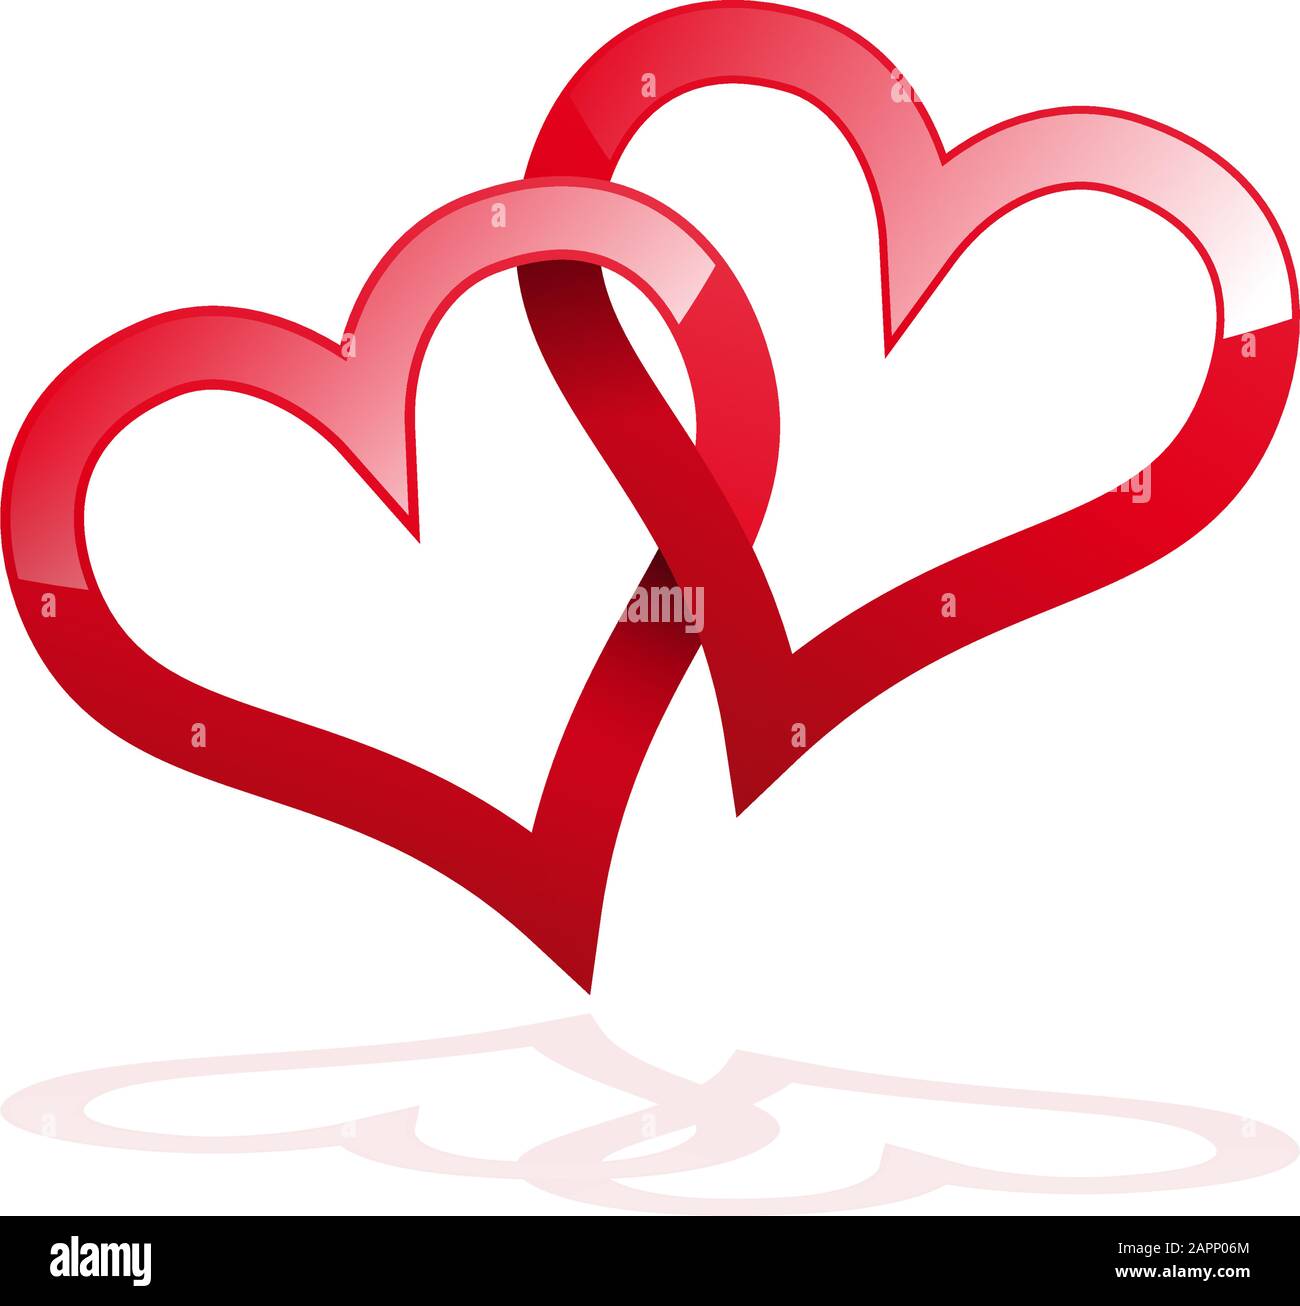 Vektor zwei verdrehte rote Herzen, zusammengebunden. Begriff der ewigen Liebe Stock Vektor